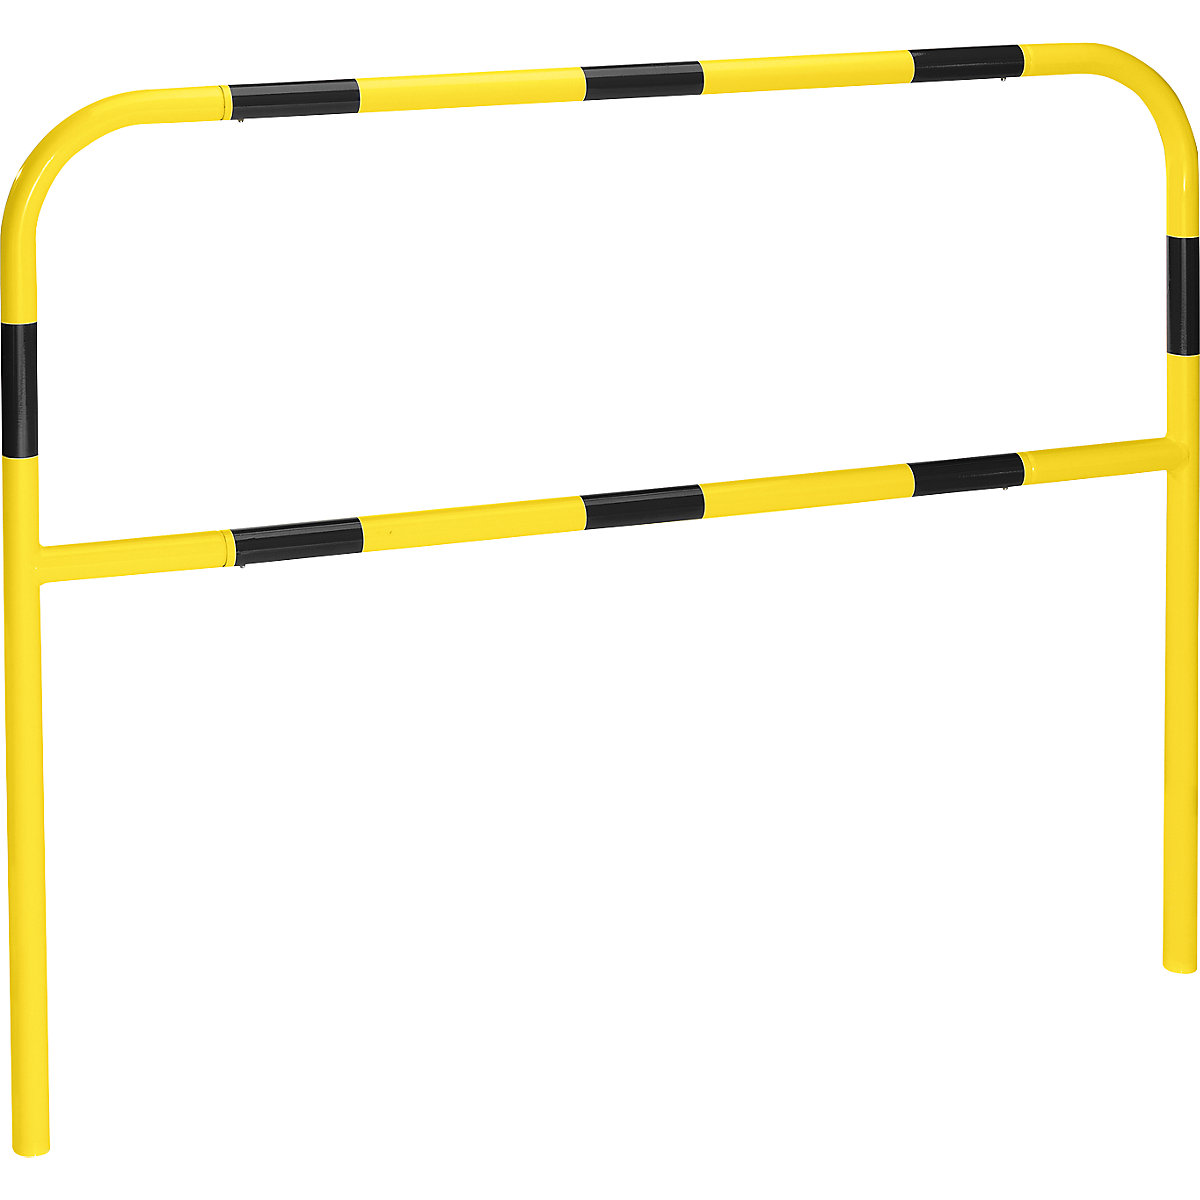 Sicherheitsbügel für Gefahrenzonen, zum Einbetonieren, gelb / schwarz, Breite 1500 mm